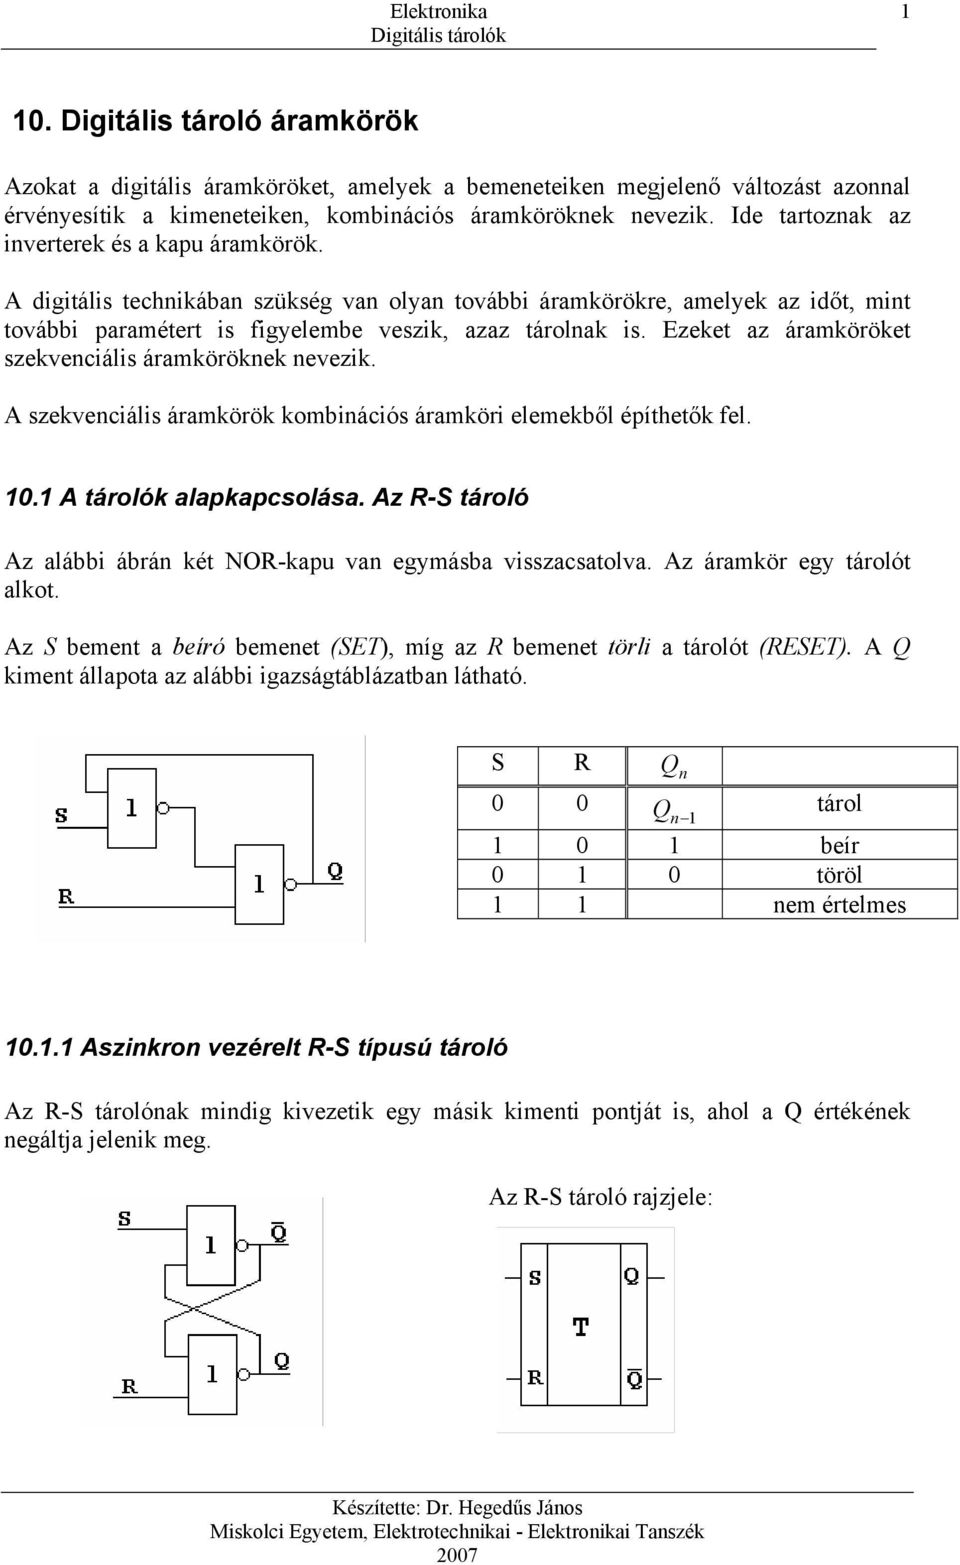 10. Digitális tároló áramkörök - PDF Ingyenes letöltés